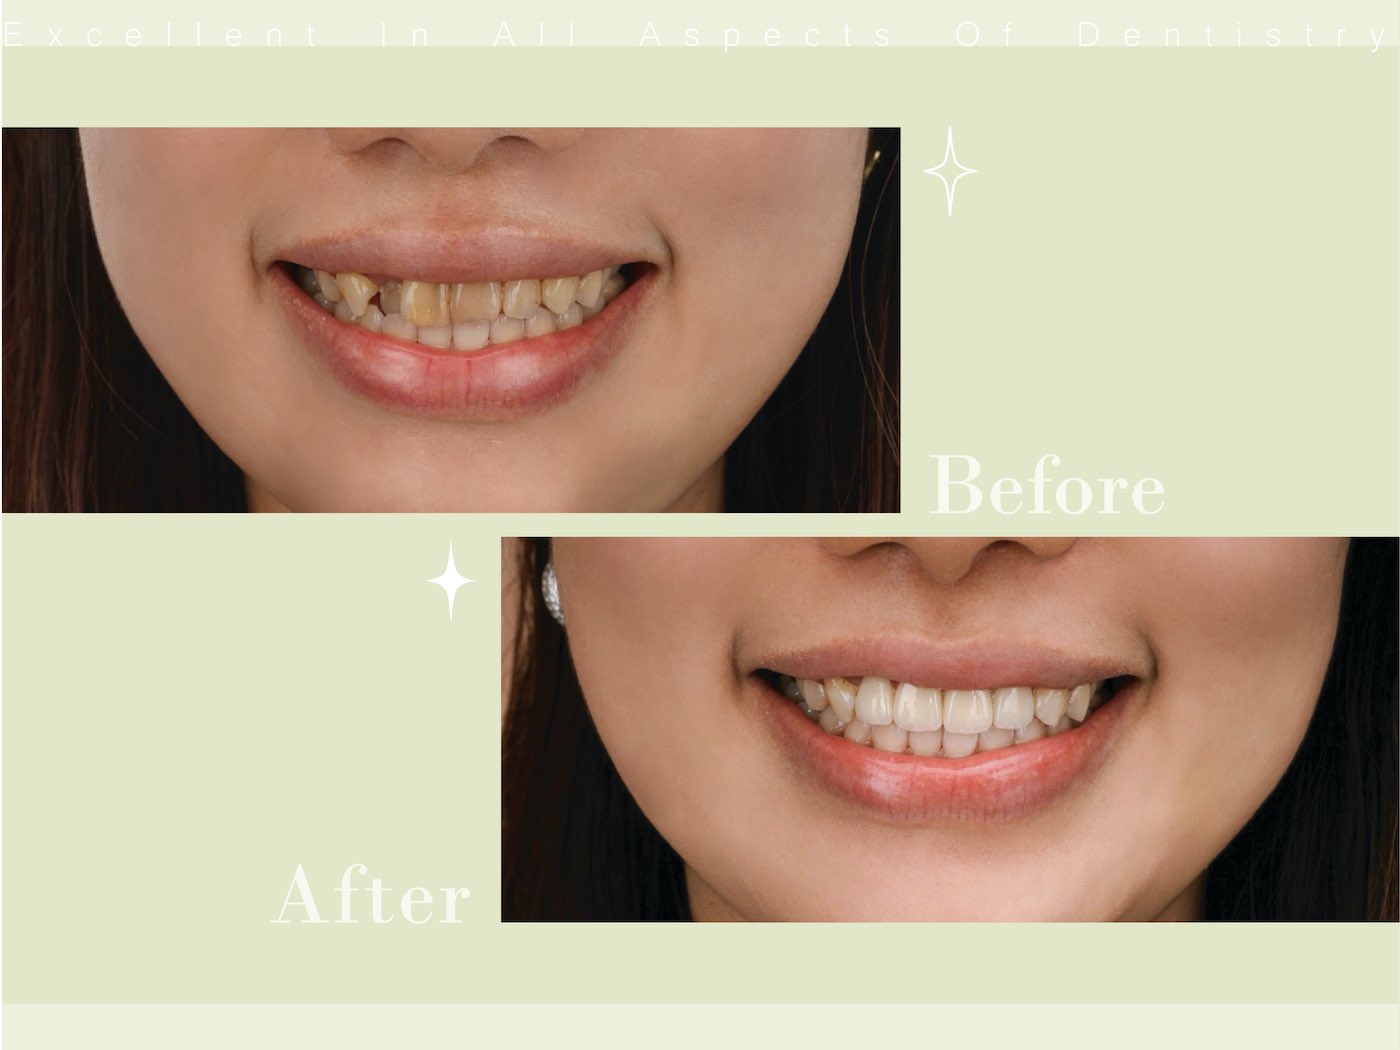 全瓷冠療程前後微笑曲線對比，牙齒變得整齊、齒色自然透亮